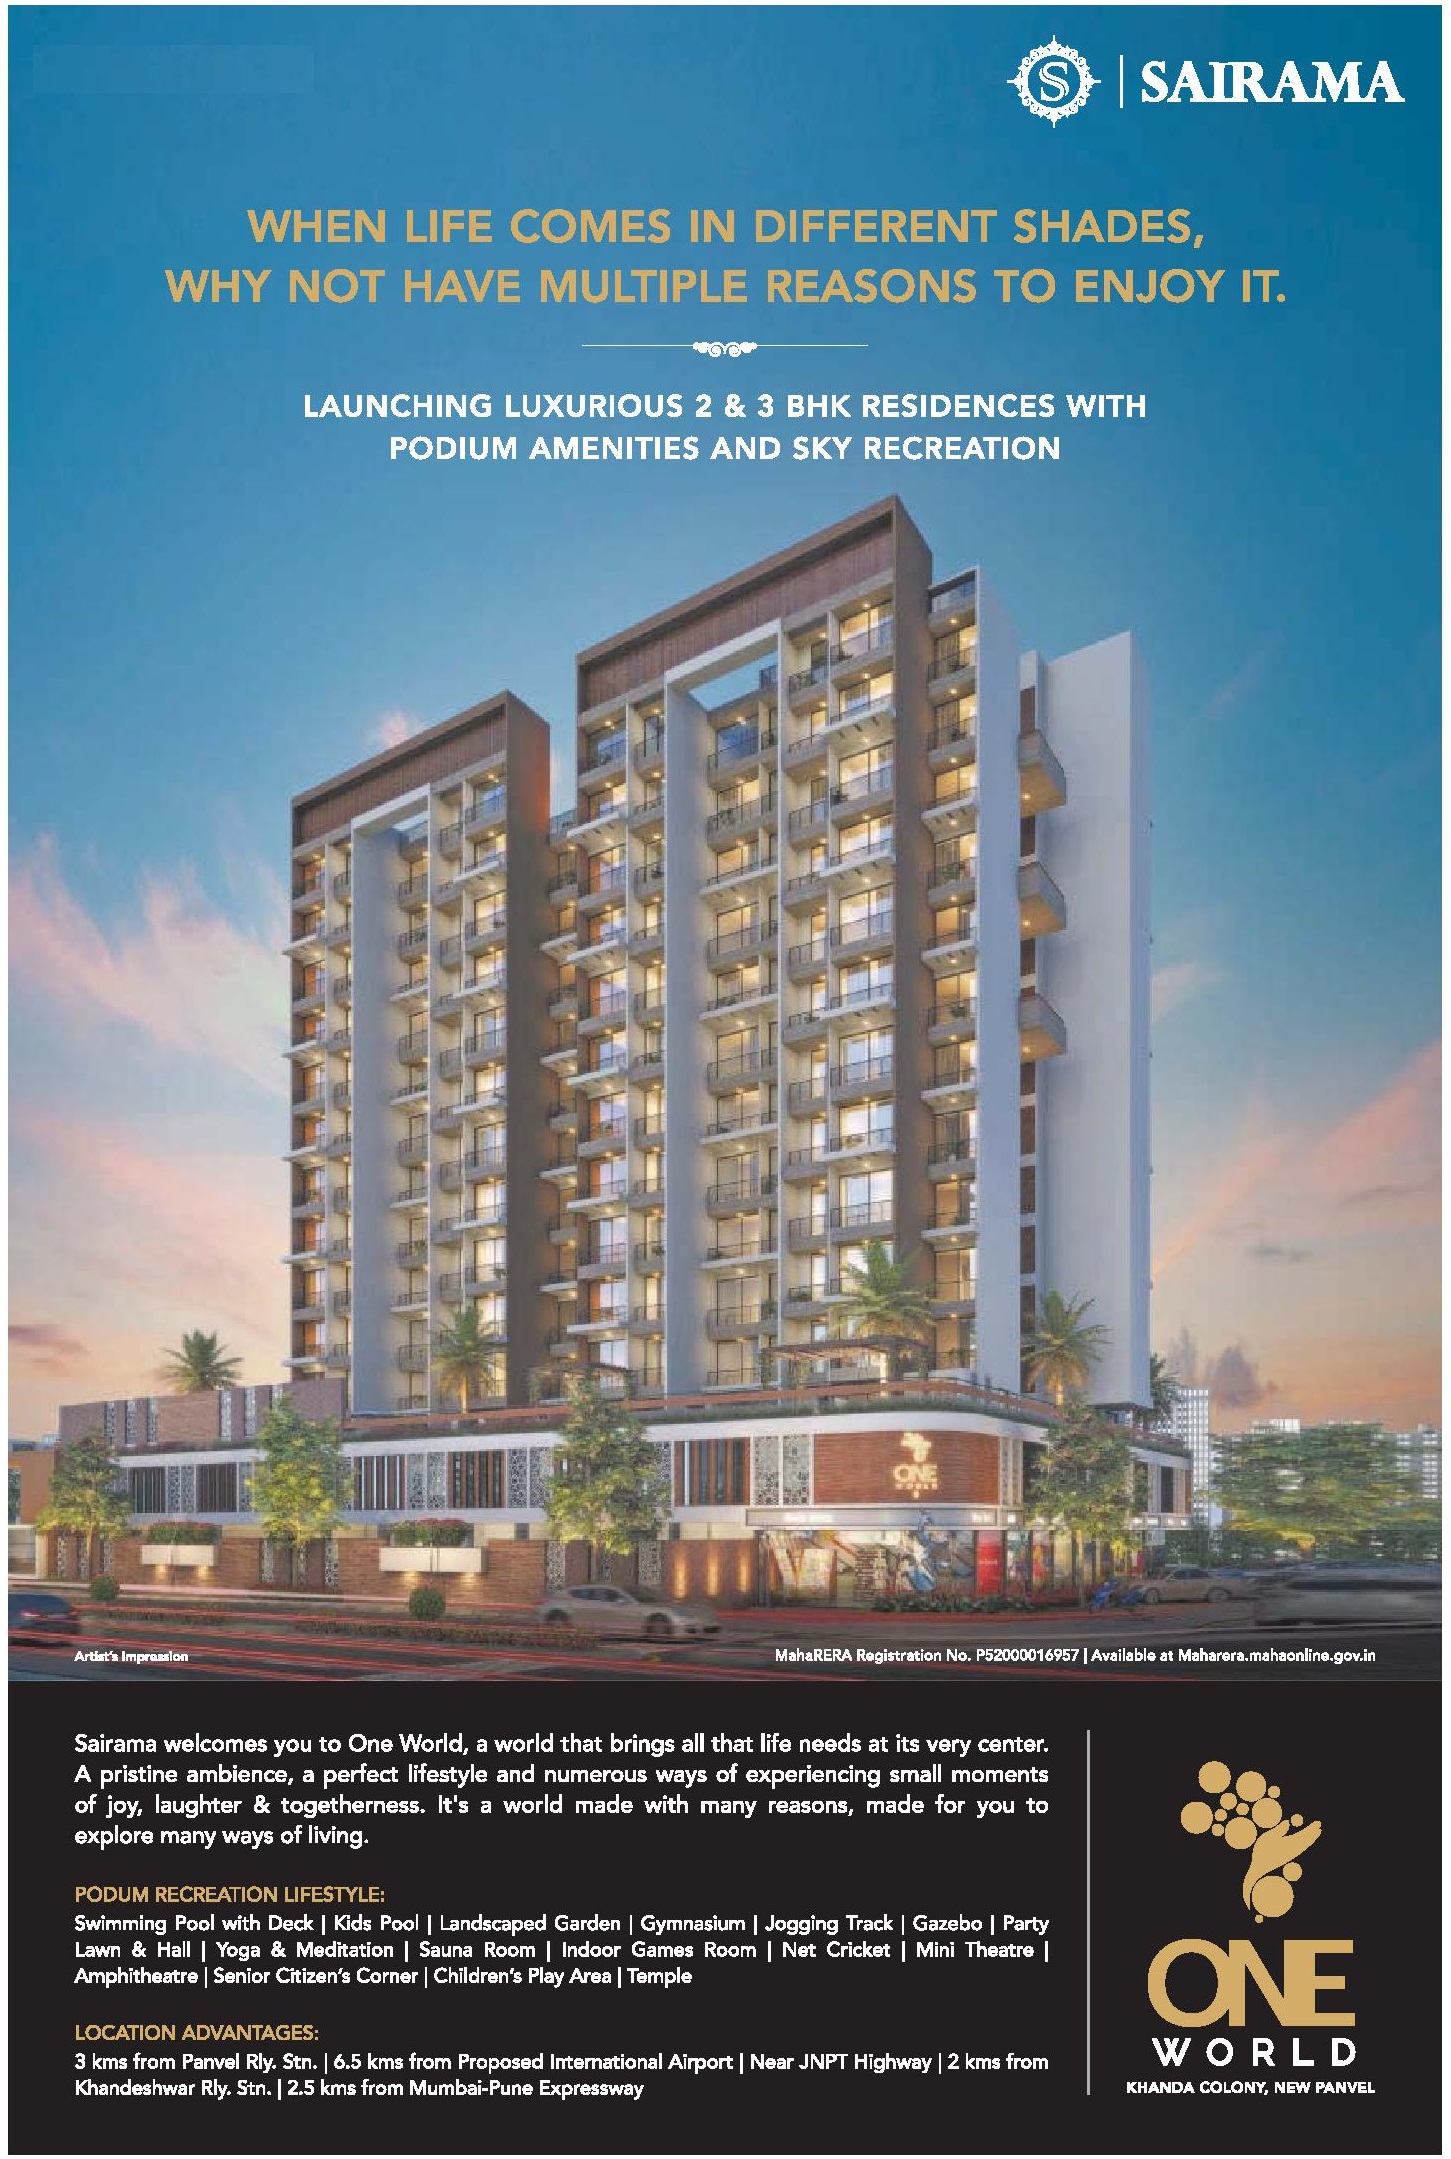 Launching 2 & 3 bhk residences with podium amenities & sky recreation at Sairama One World in Navi Mumbai Update